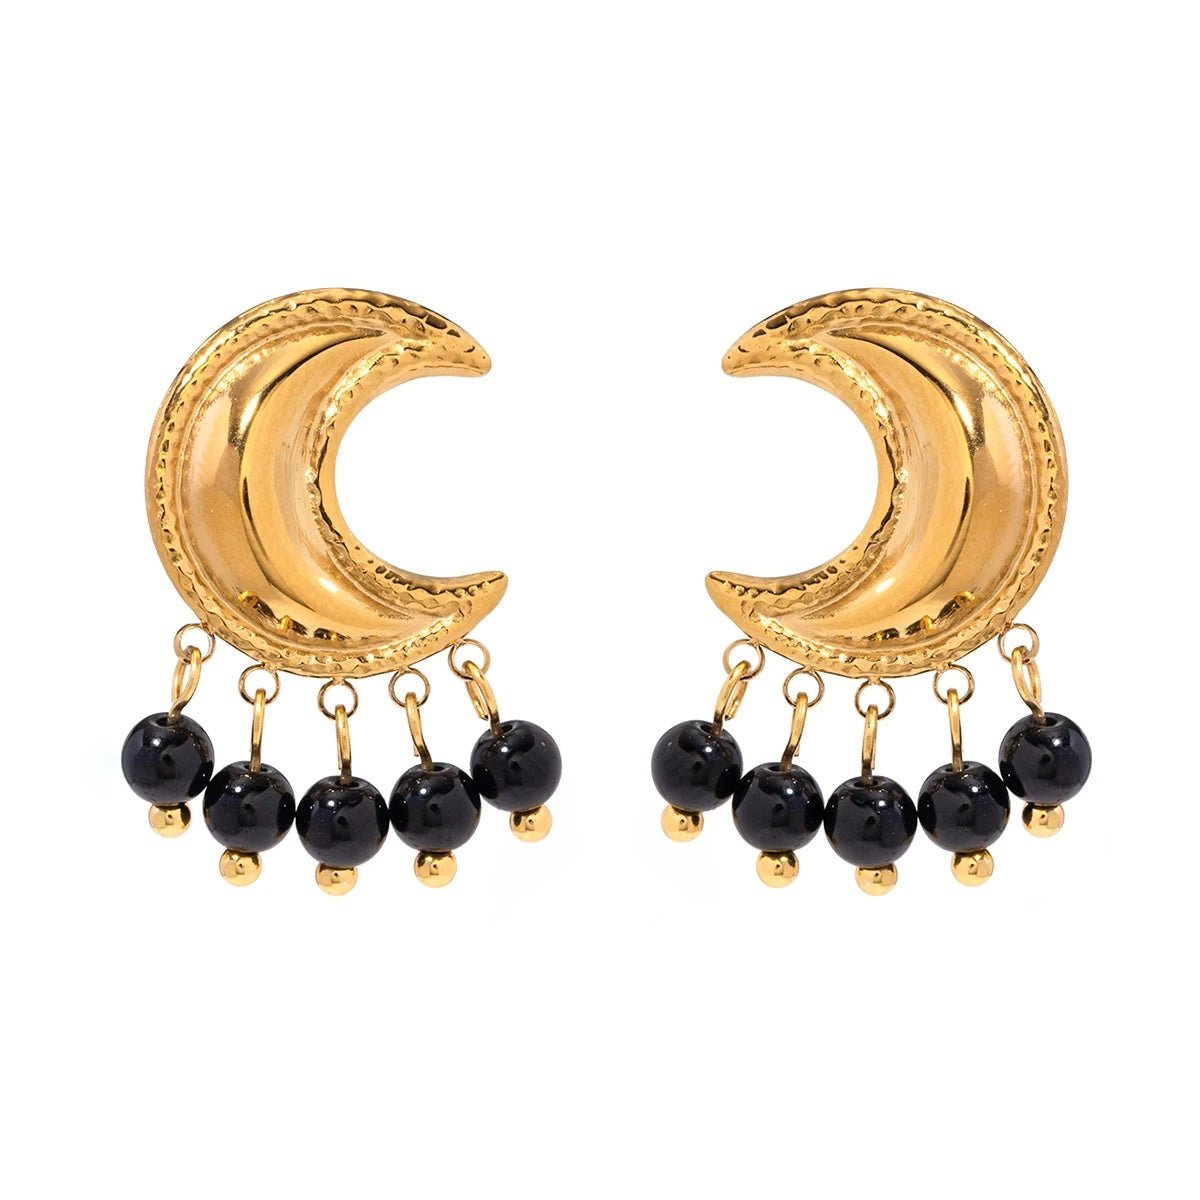 Golden Crescent Moon Astrology Necklace Bracelet Earrings Jewelry Set - Veinci